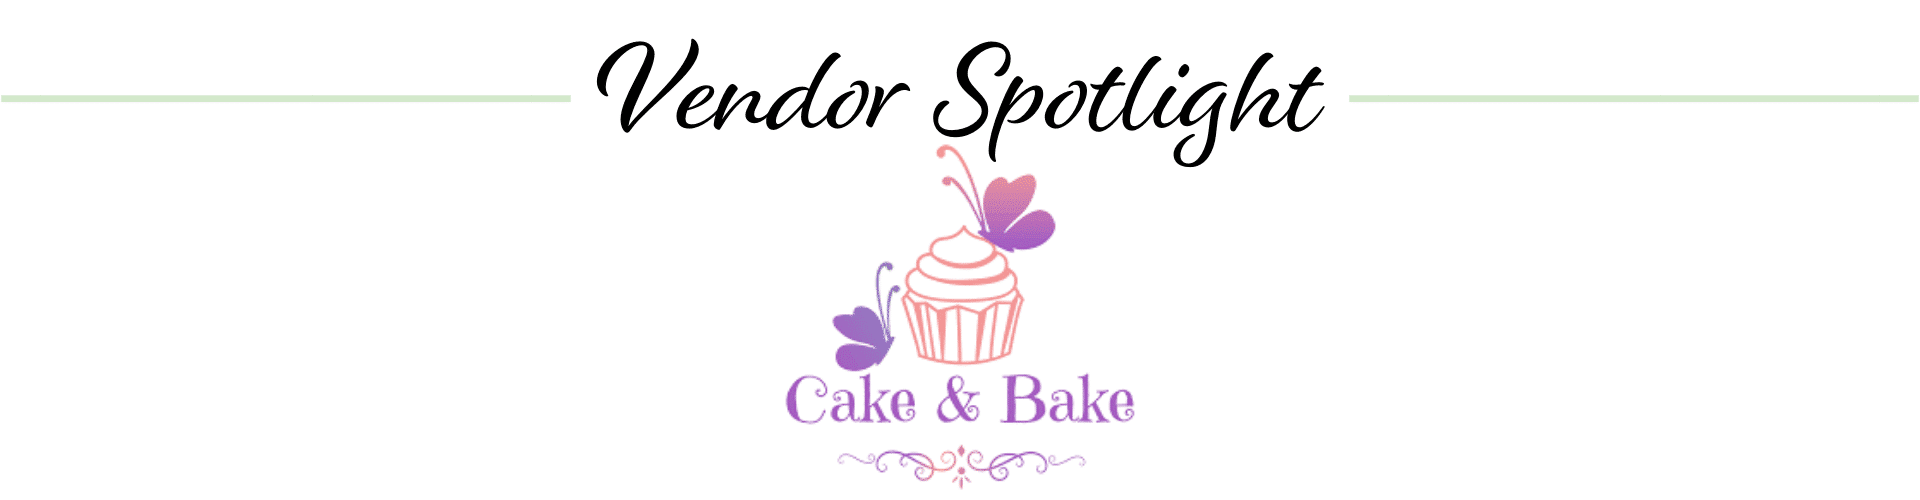 Cake & Bake logo